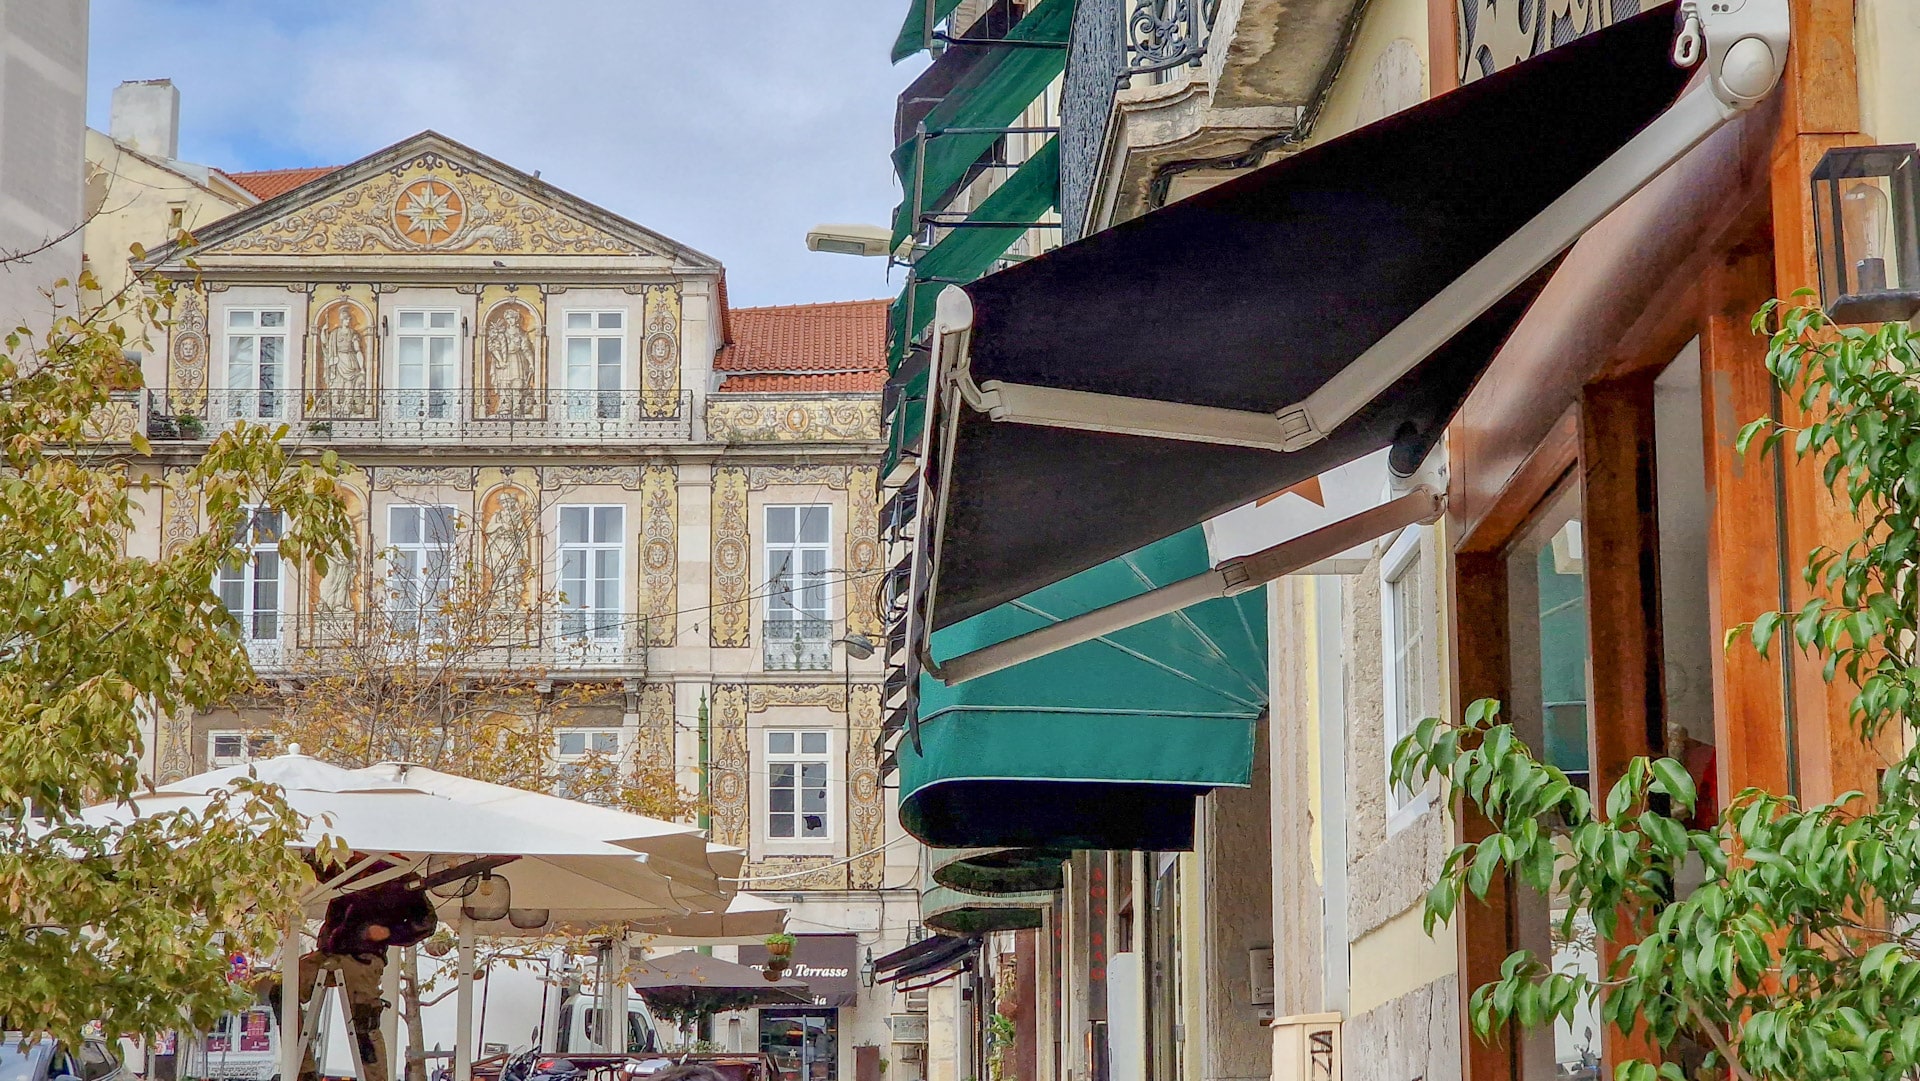 Baixa e Chiado sono due famosi quartieri di Lisbona noti per l'architettura, i caffè, lo shopping e la vita notturna.